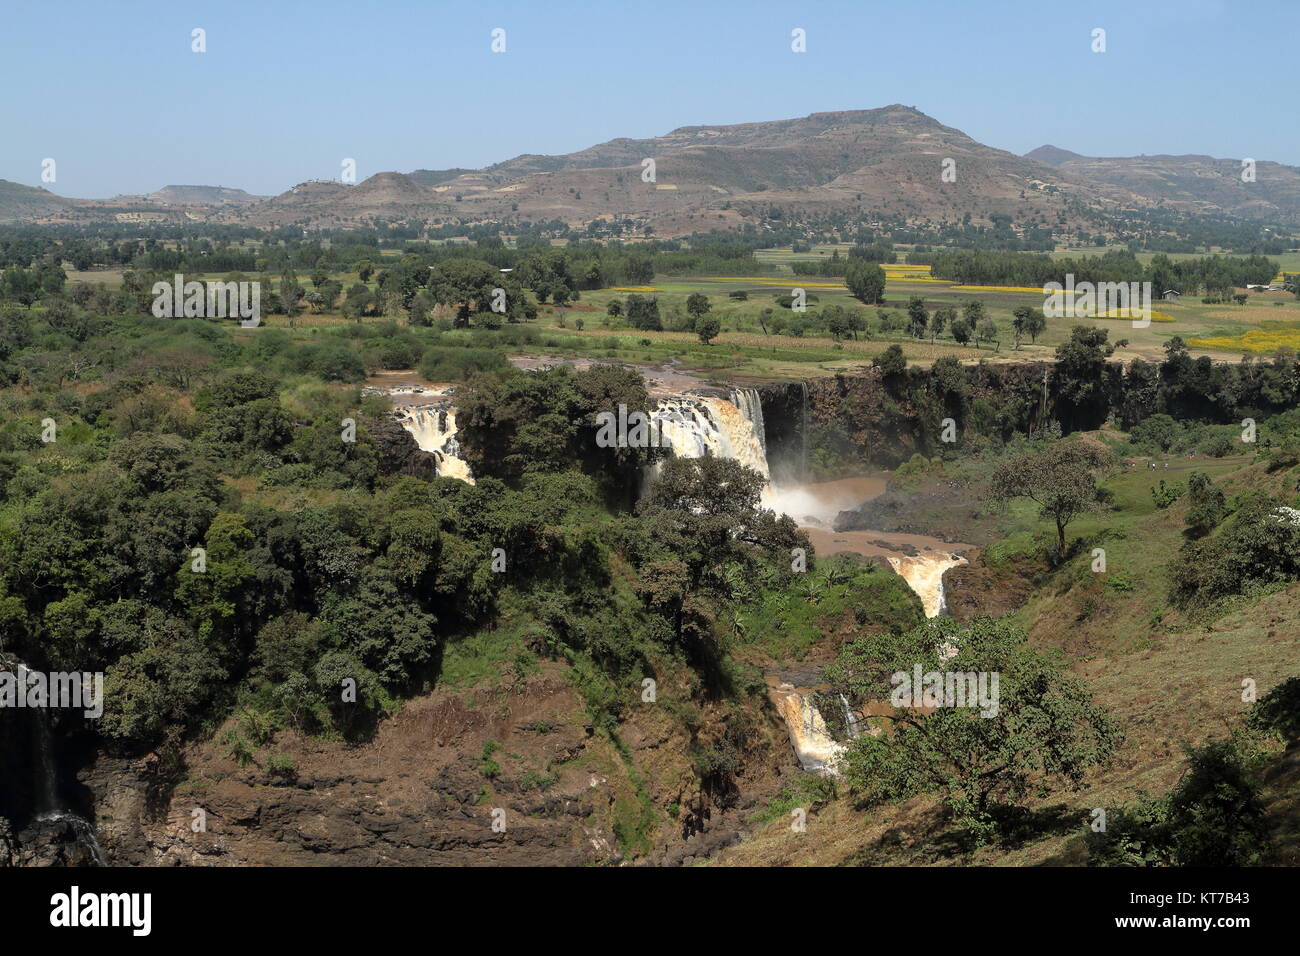 the nile waterfall tisissat in ethiopia Stock Photo